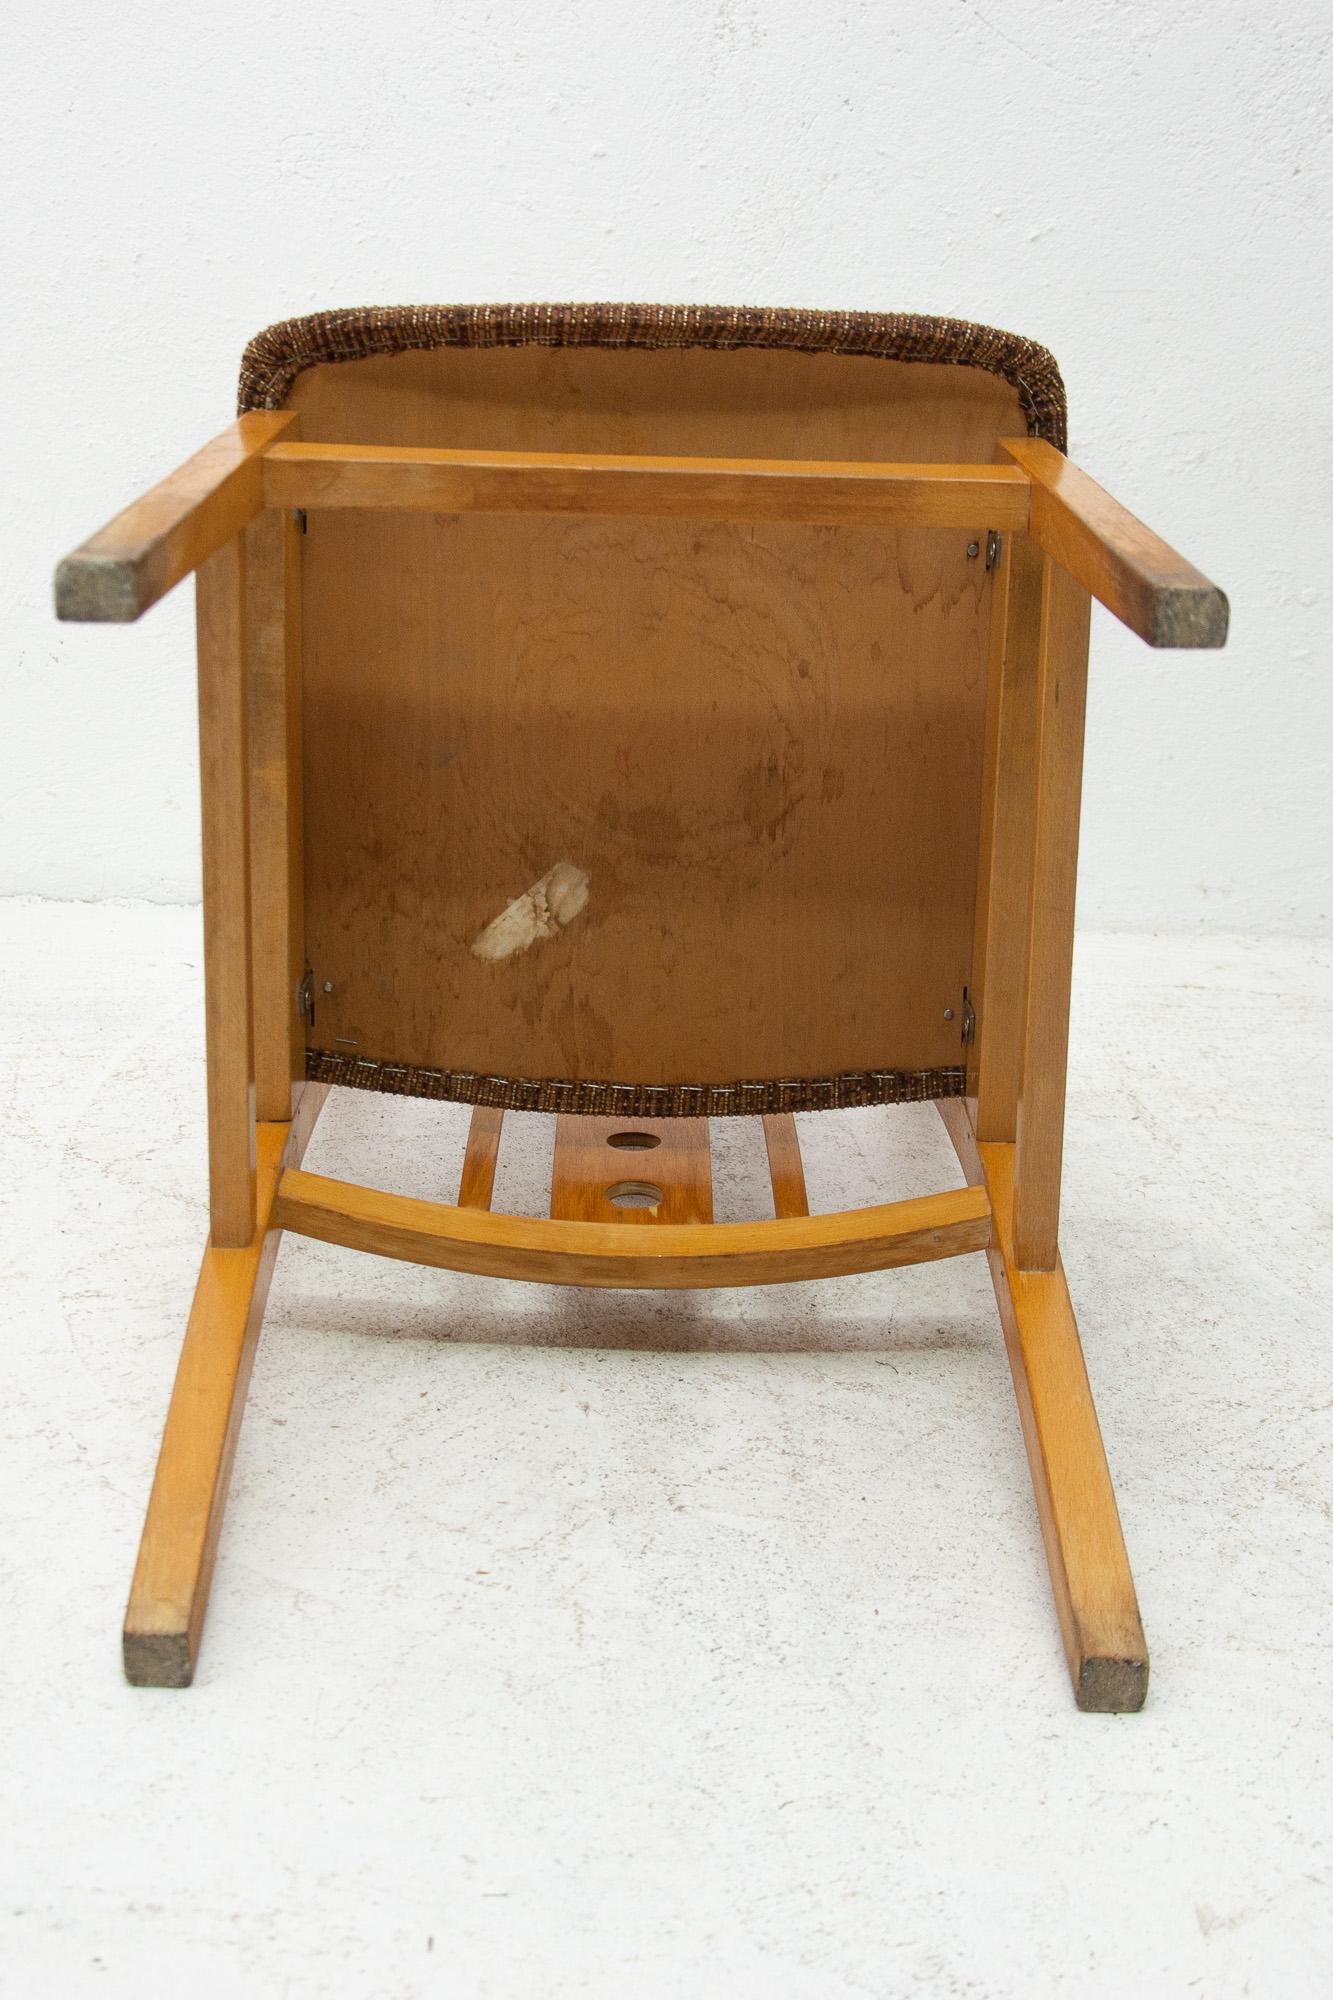 Satz von vier gepolsterten Esszimmerstühlen, hergestellt in der ehemaligen Tschechoslowakei in den 1960er Jahren. Die Stühle sind aus Buchenholz gefertigt. Sehr interessante Formgebung. Die Polsterung und das Holz sind in gutem Vintage-Zustand, mit